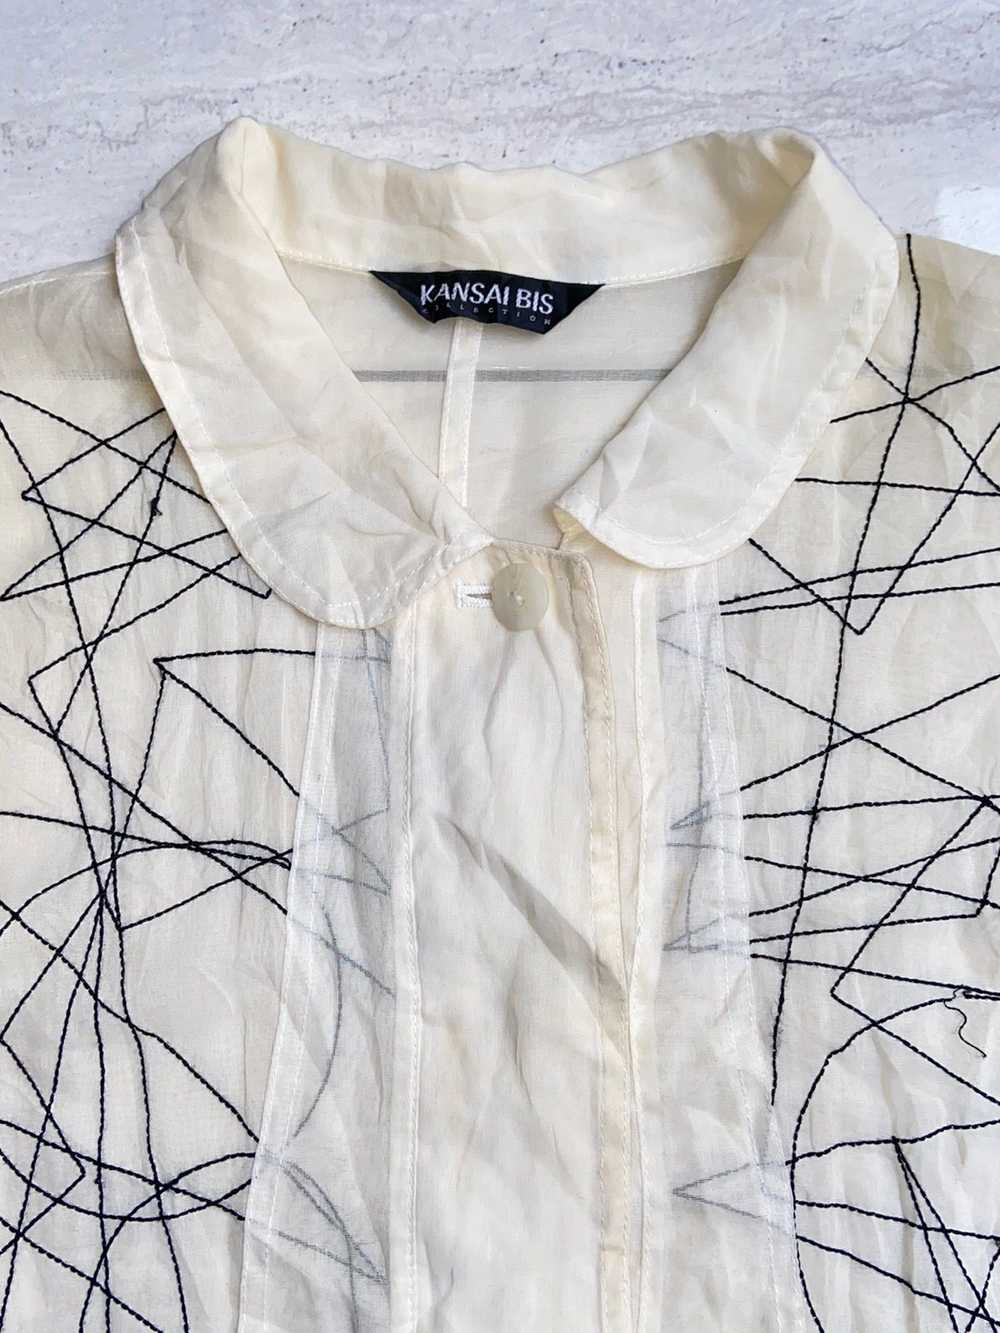 Kansai Yamamoto KANSAI BIS White Mesh Shirt - image 6